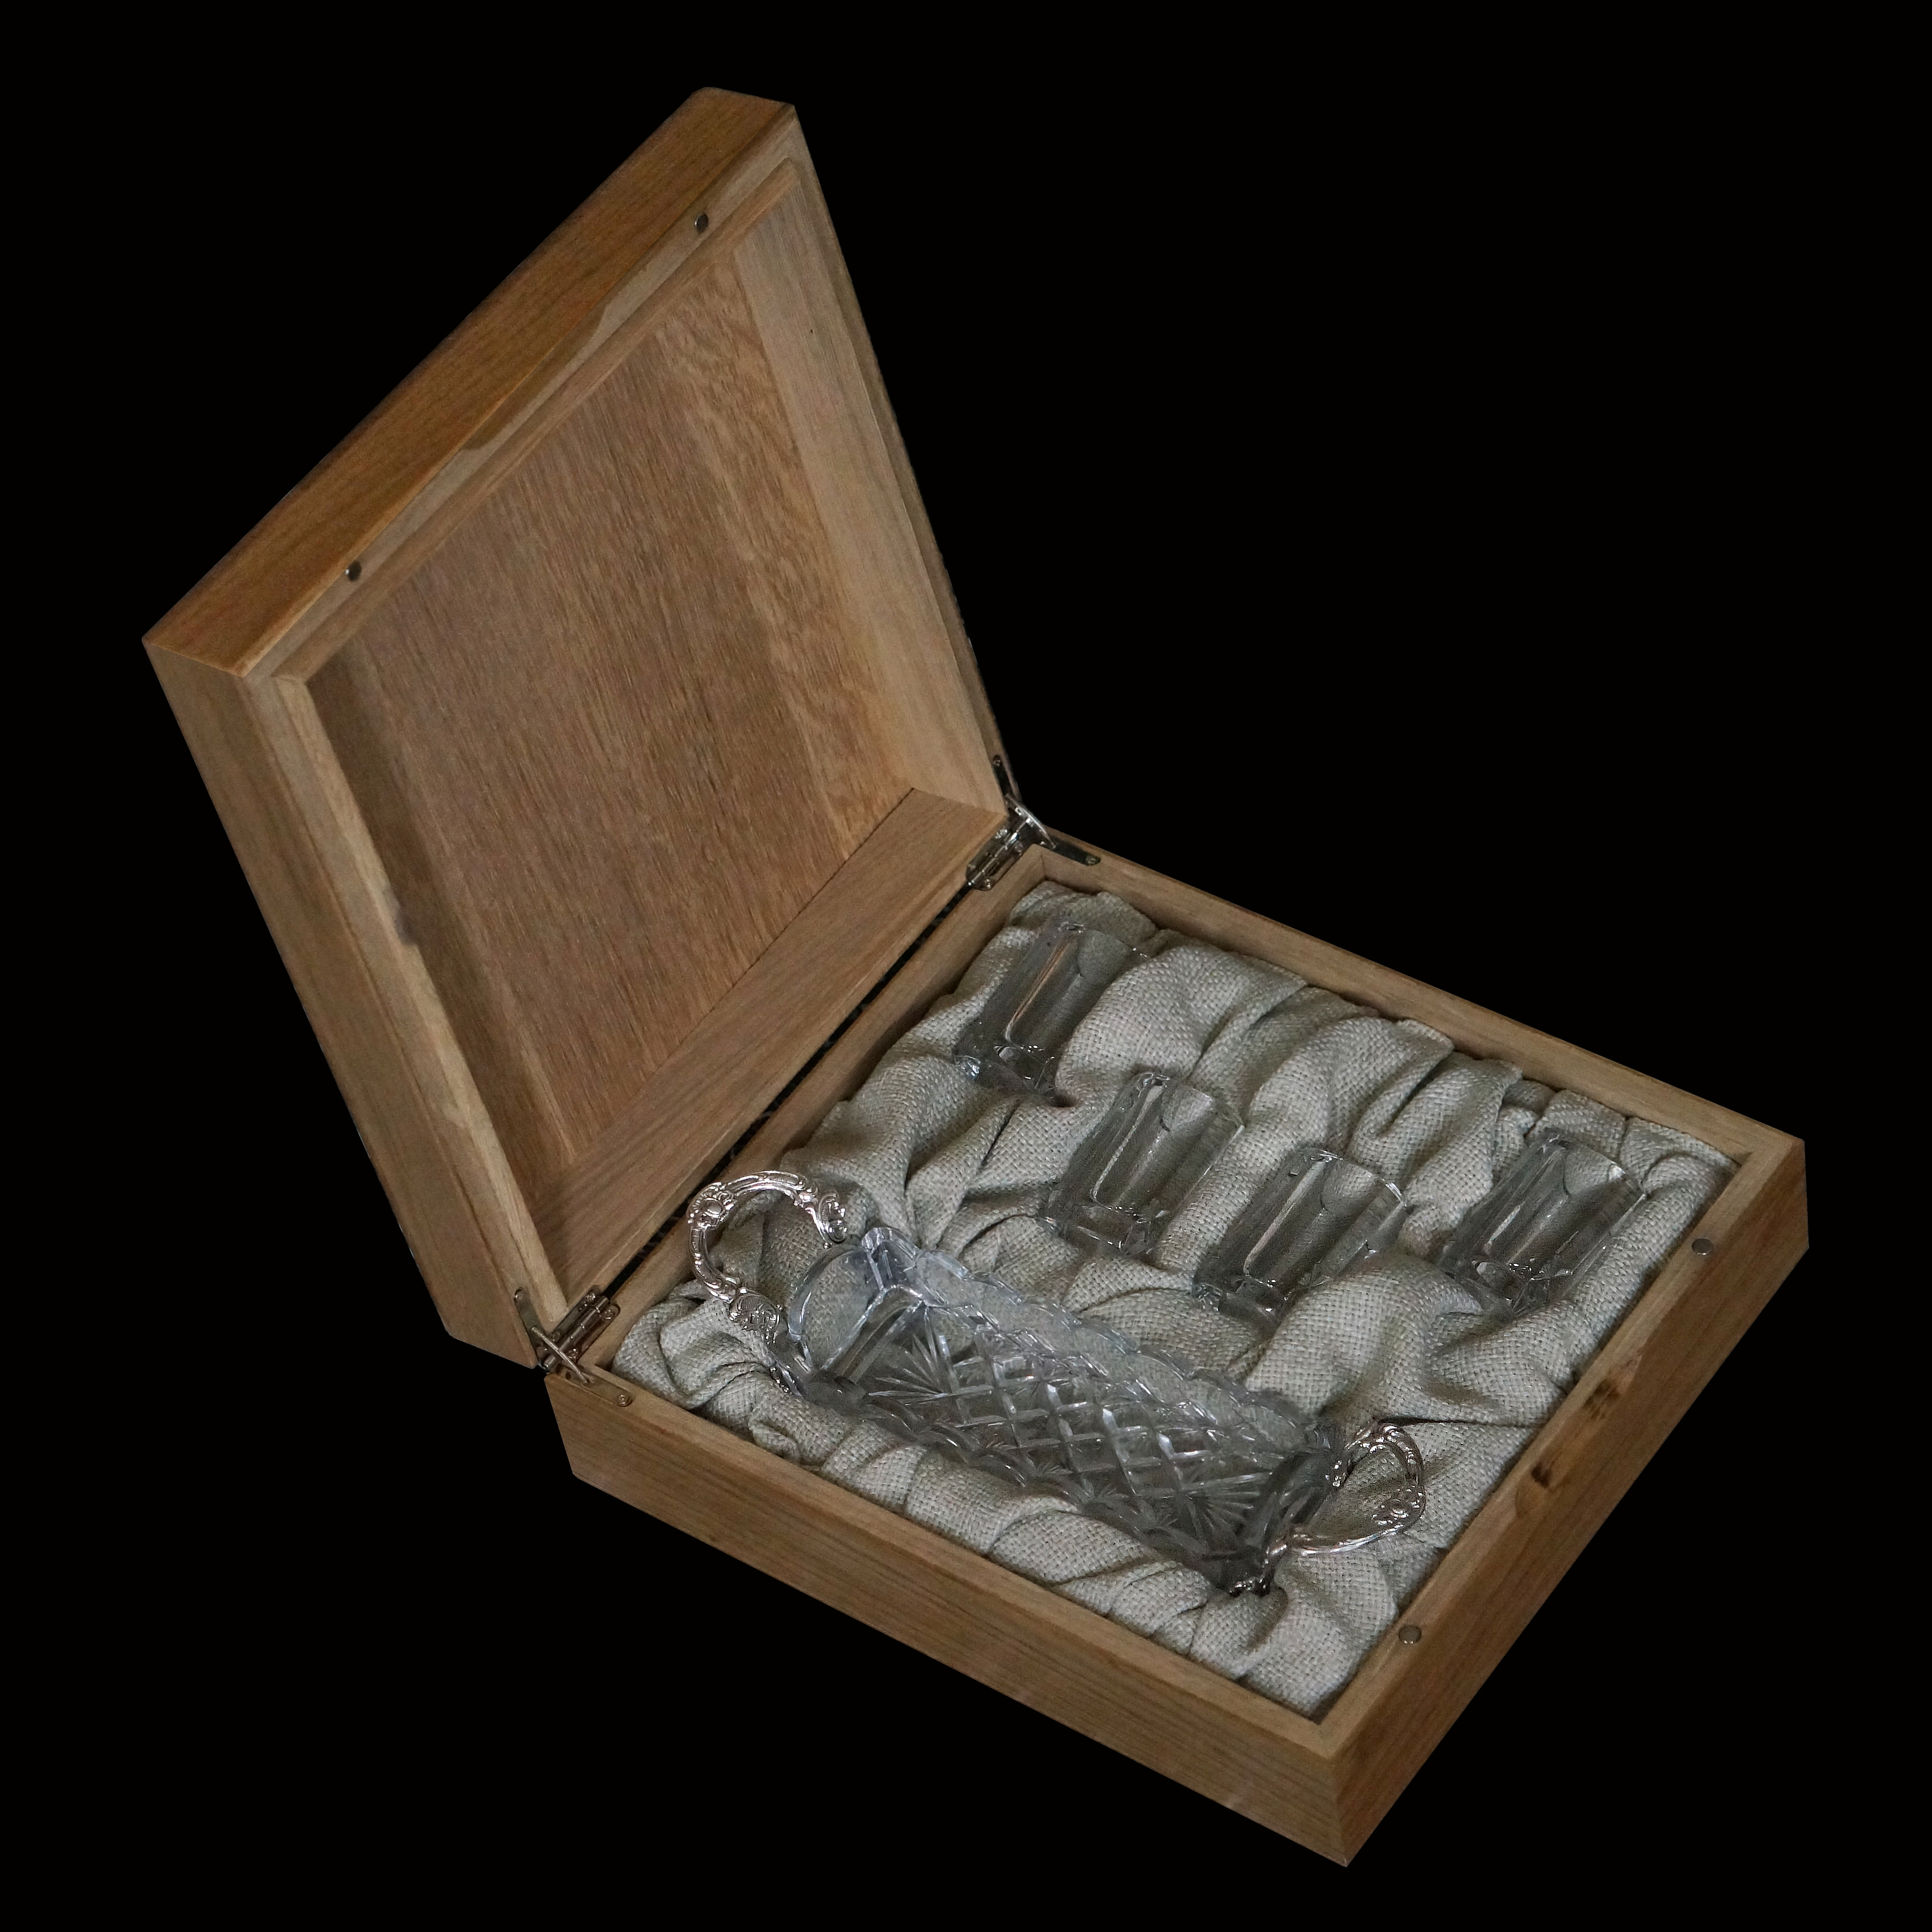 подарочный набор Старая москва в коробке из массива дубасигнатюр из хрусталя и серебра в коробке из дуба